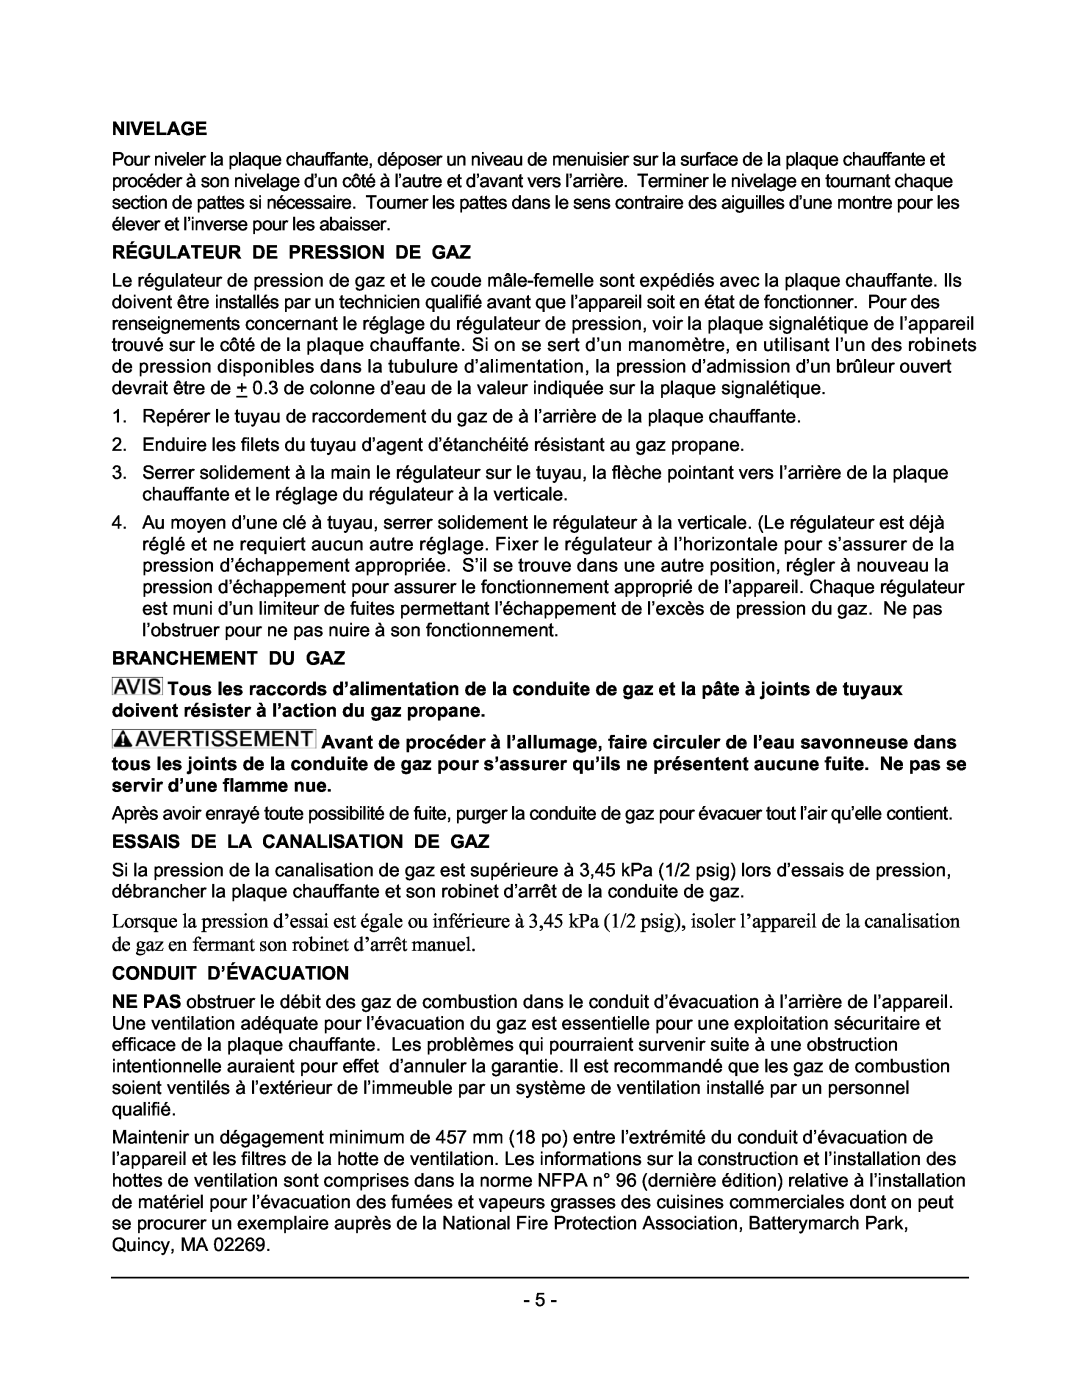 Vulcan-Hart GCT48, GCT60 Nivelage, Régulateur De Pression De Gaz, Branchement Du Gaz, Essais De La Canalisation De Gaz 